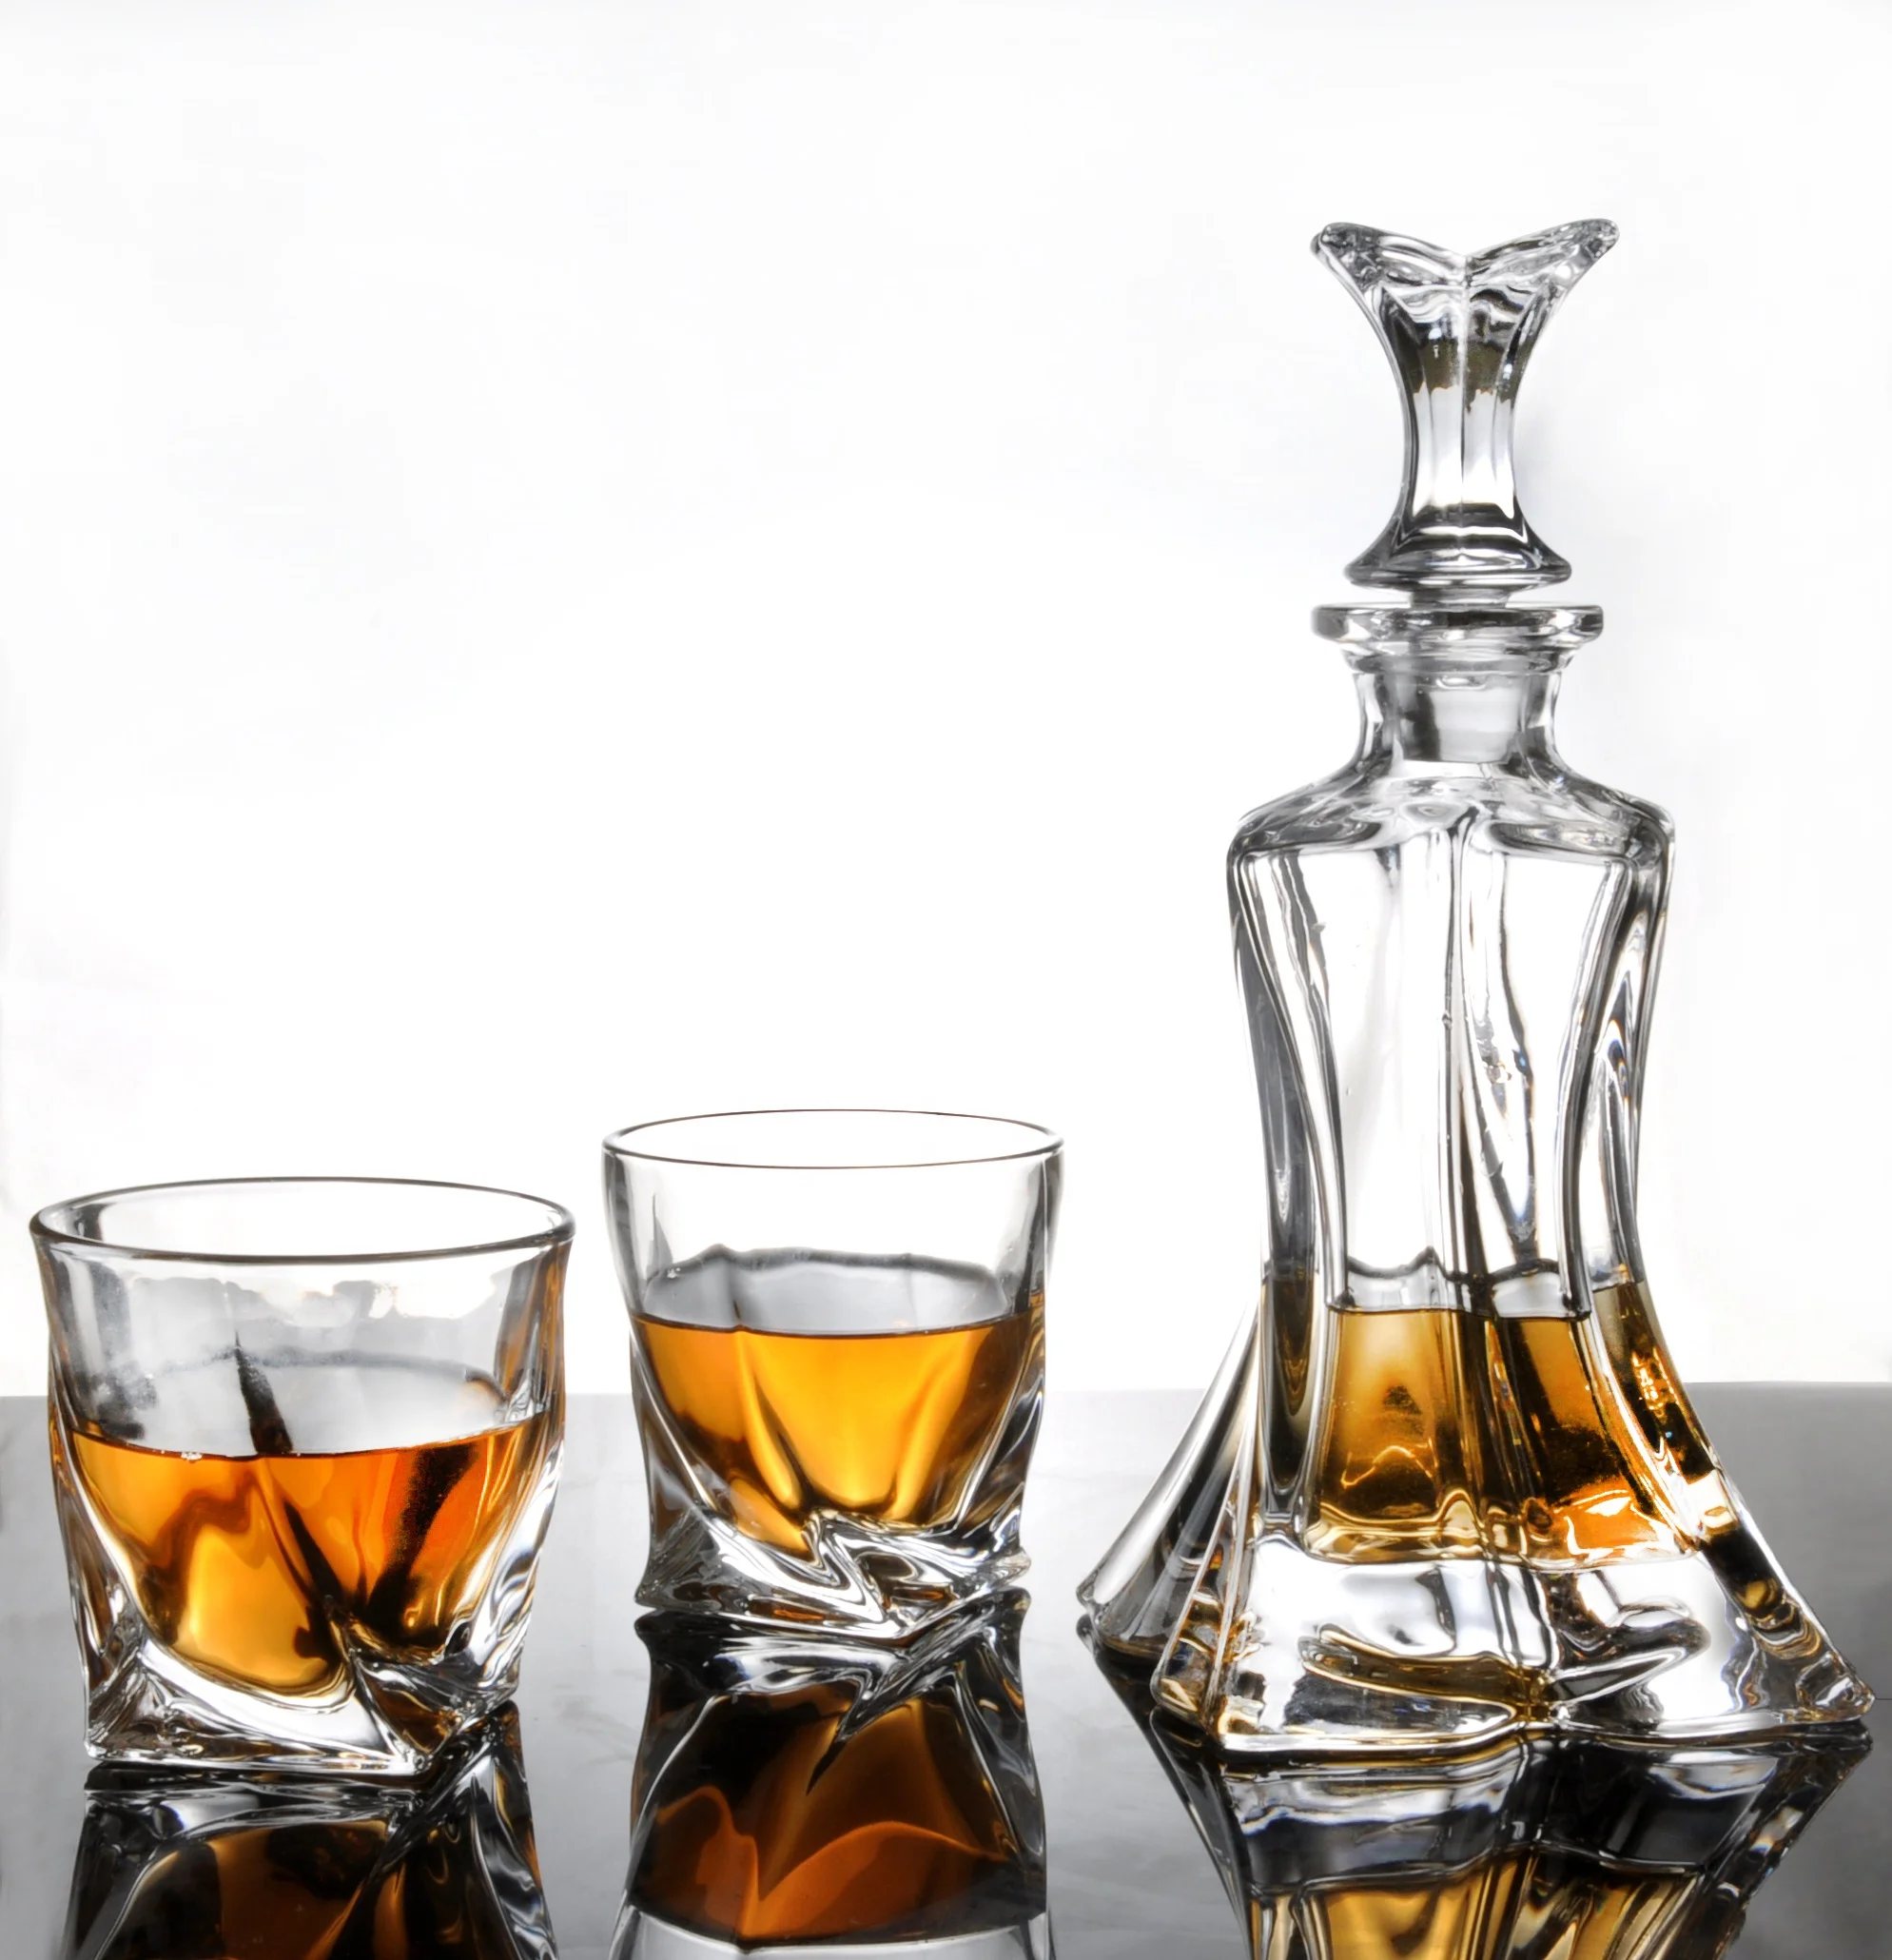 Amazon Mode 400ml Whisky Set Whisky Bril - Buy Macallan Whiskey Glazen Vintage Whiskey Decanter Set,Whisky Karaf Whiskey Glazen Whisky Glas Amazon Uk,Kristal Whiskey Whisky Karaf Set Decanter